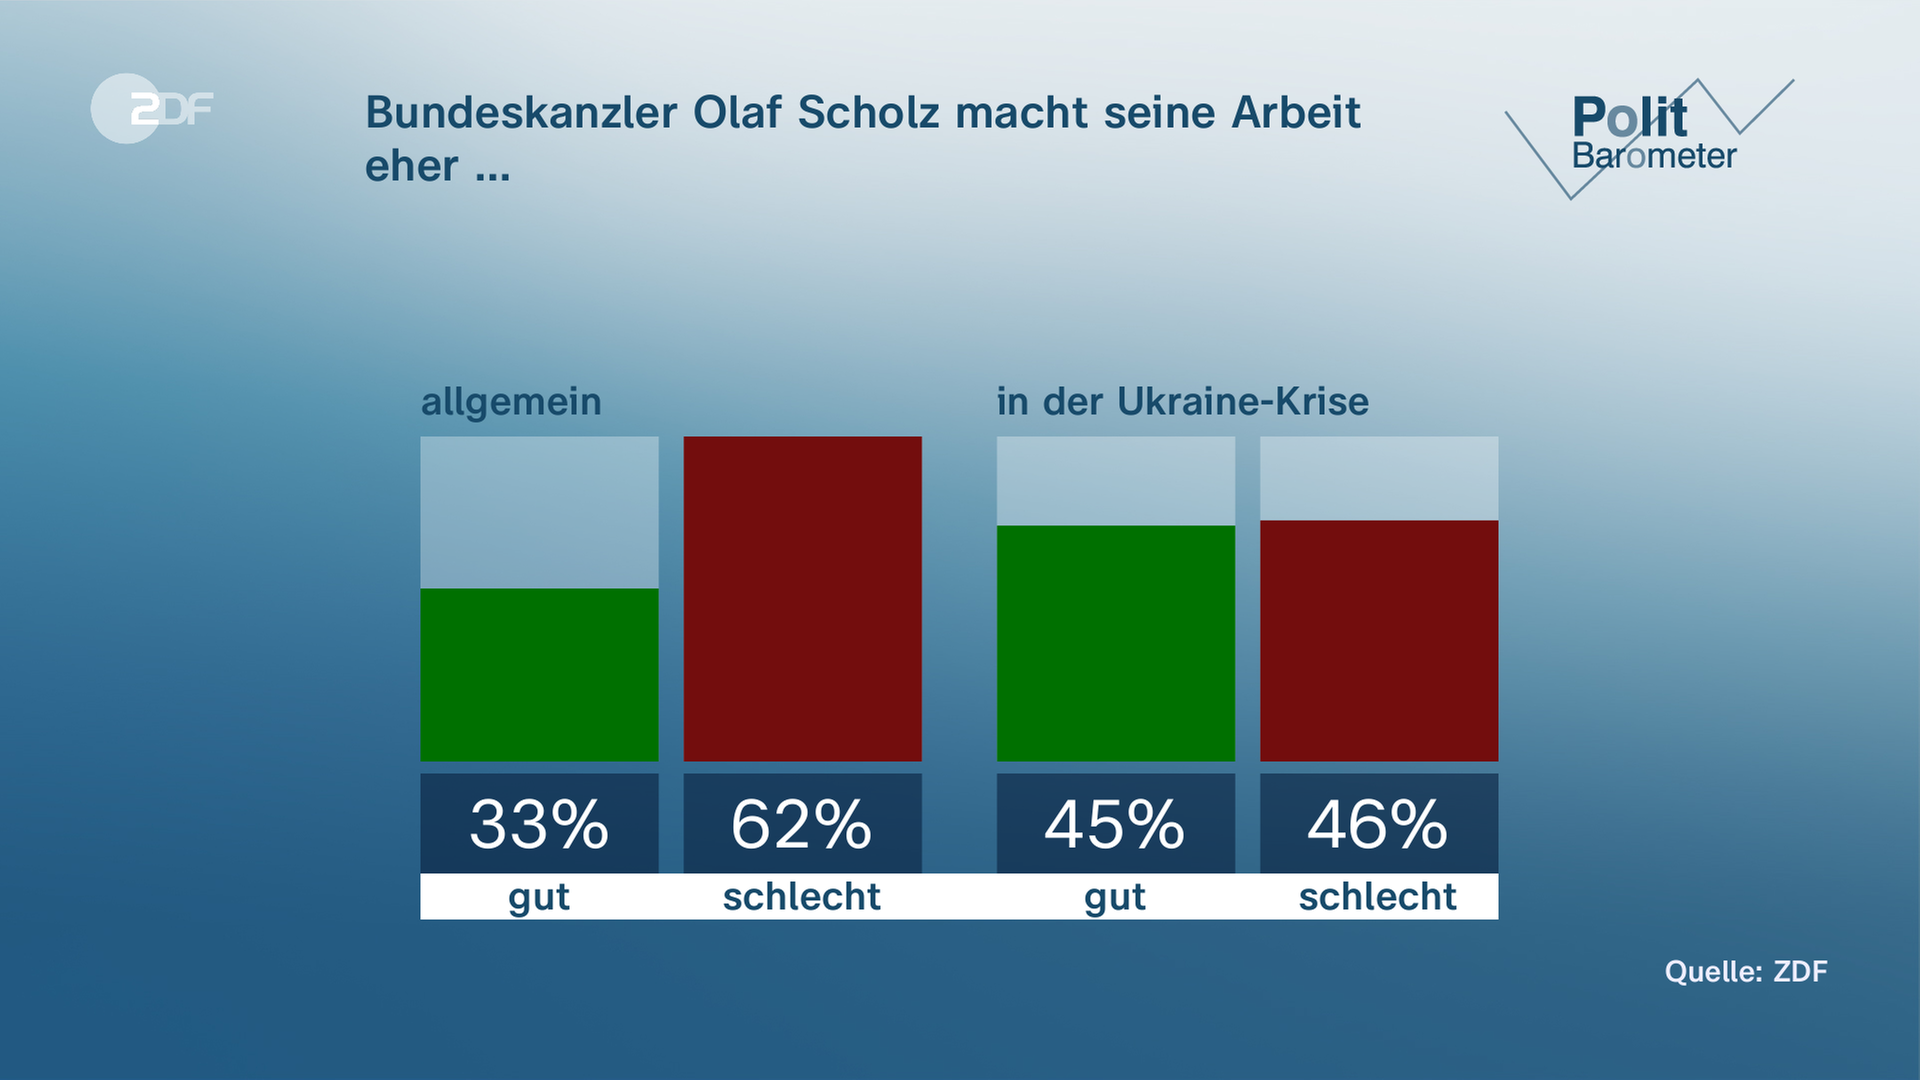 Politbarometer: Bundeskanzler Olaf Scholz macht seine Arbeit eher: Gut (33 Prozent), schlecht (62 Prozent)